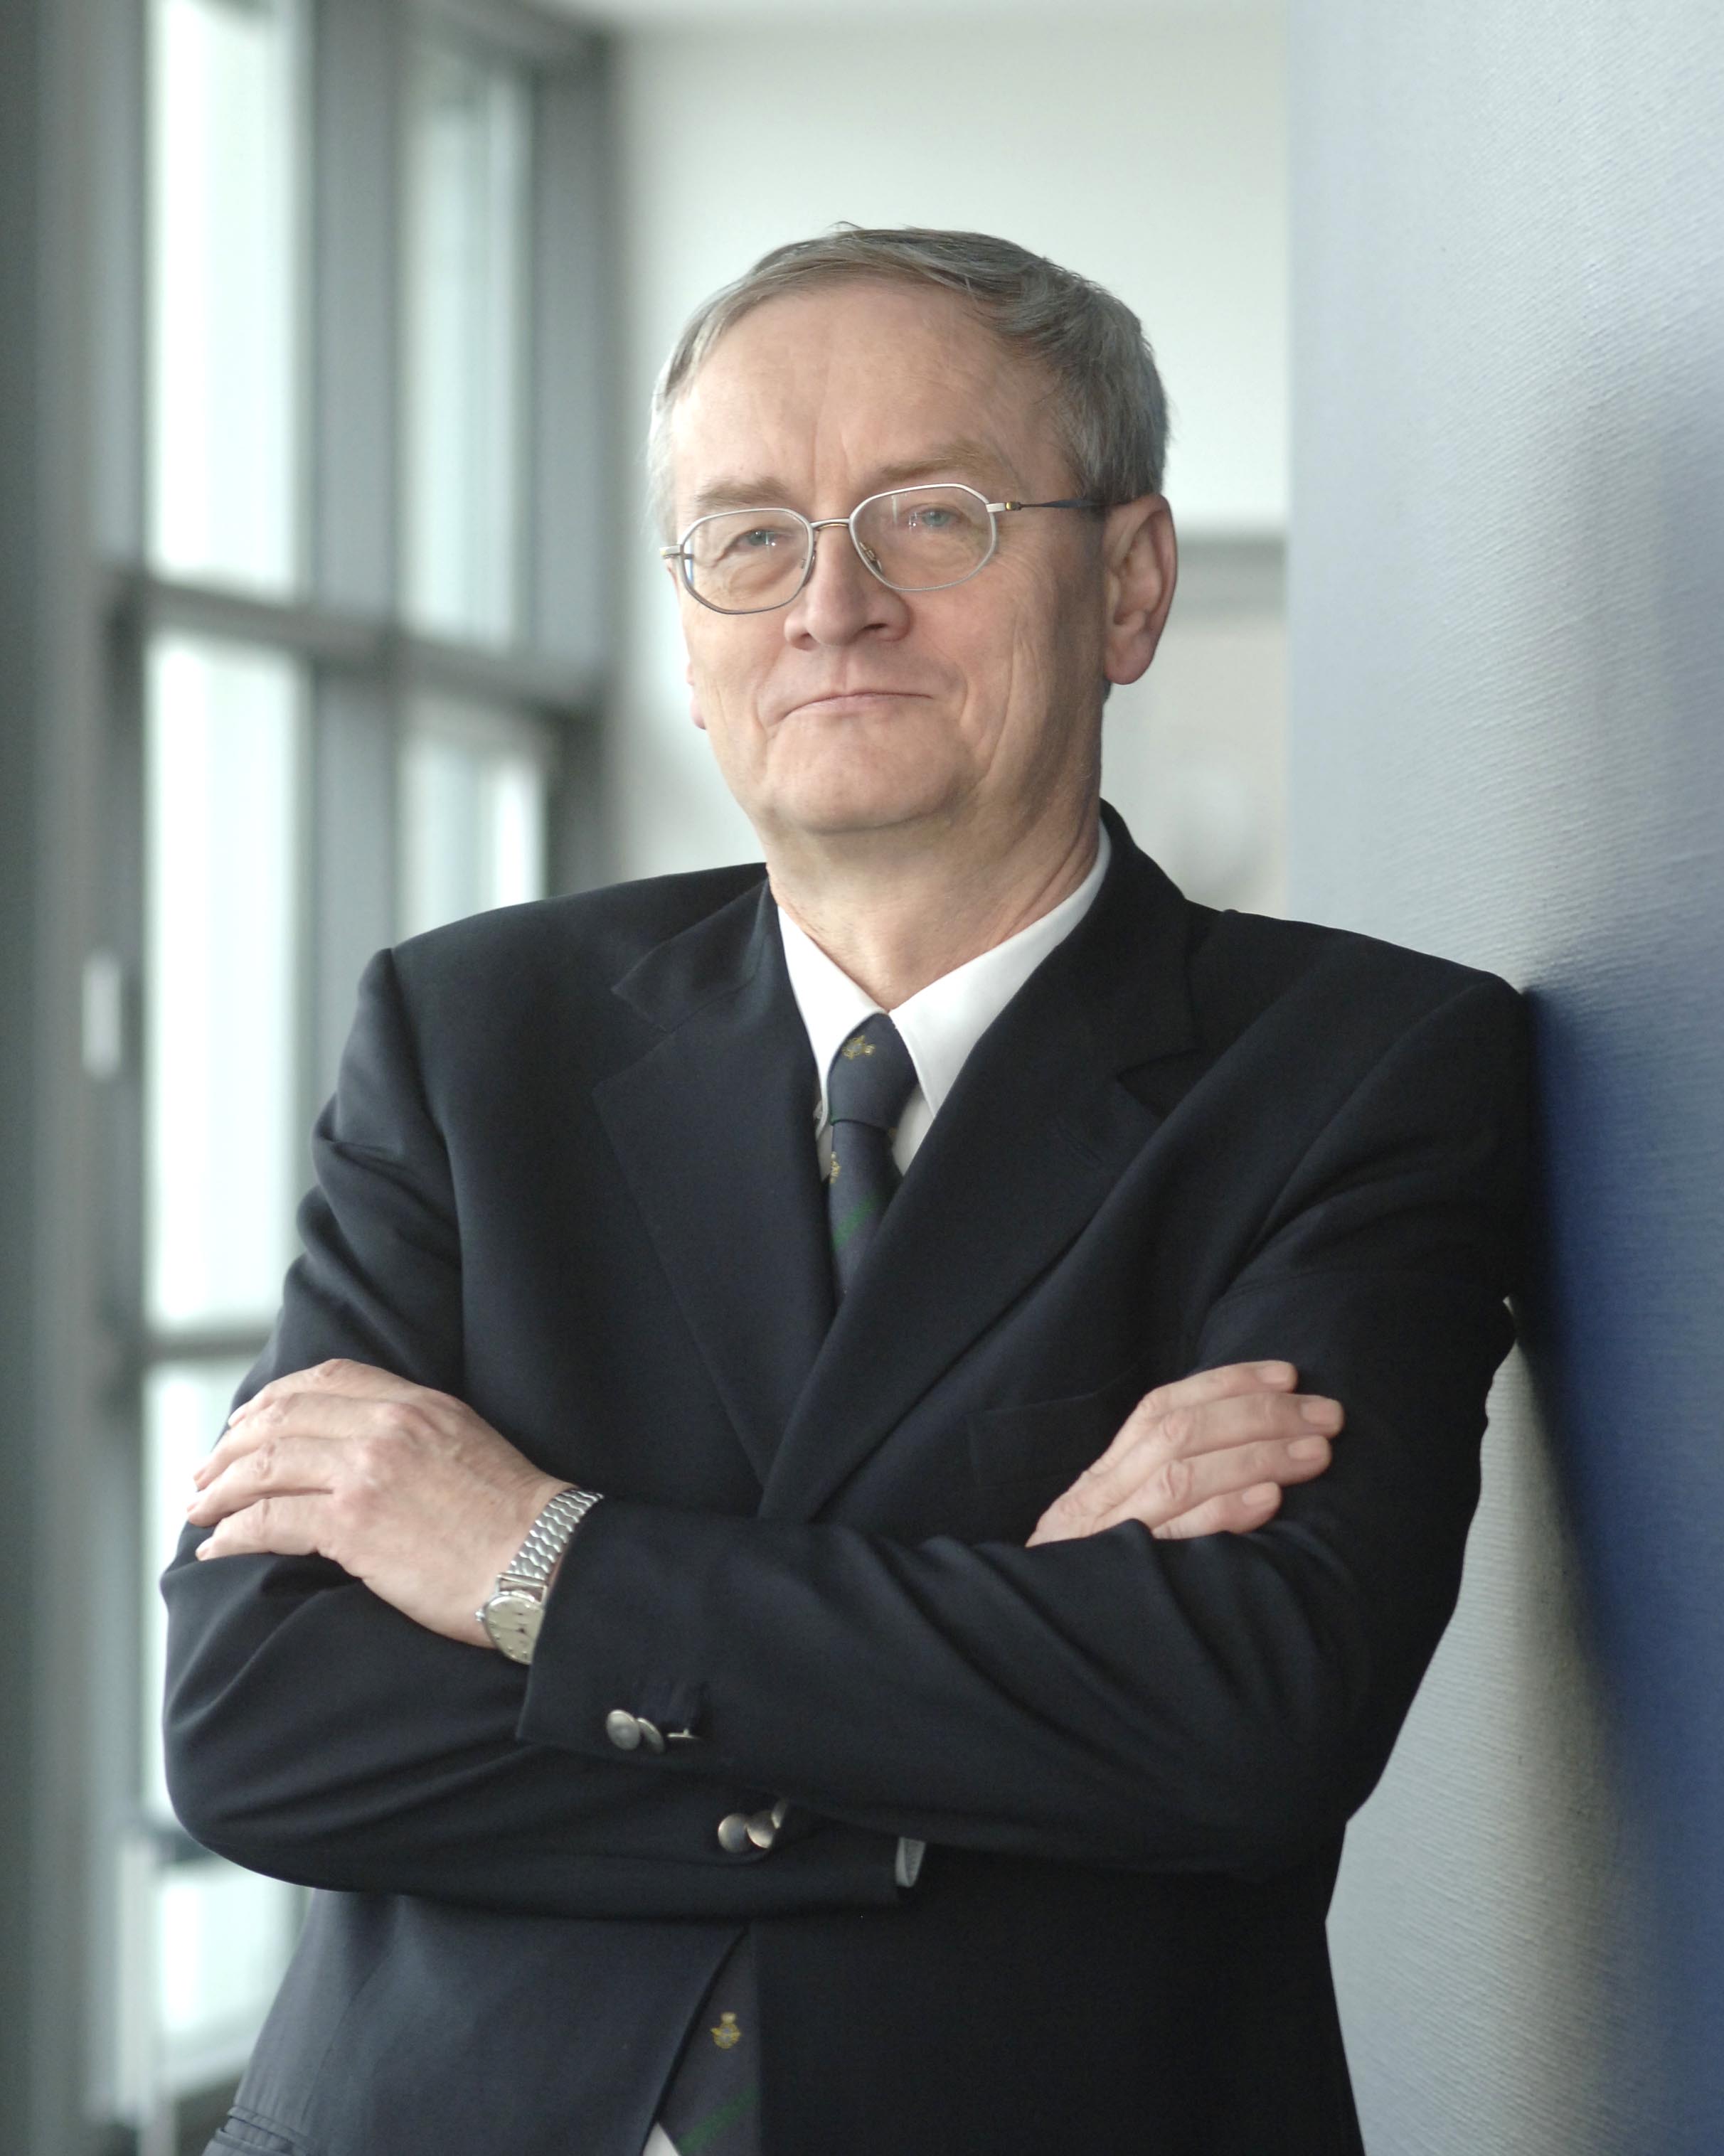 August Hanning als Staatssekretär im BMI 2006 - via bmi.bund.de